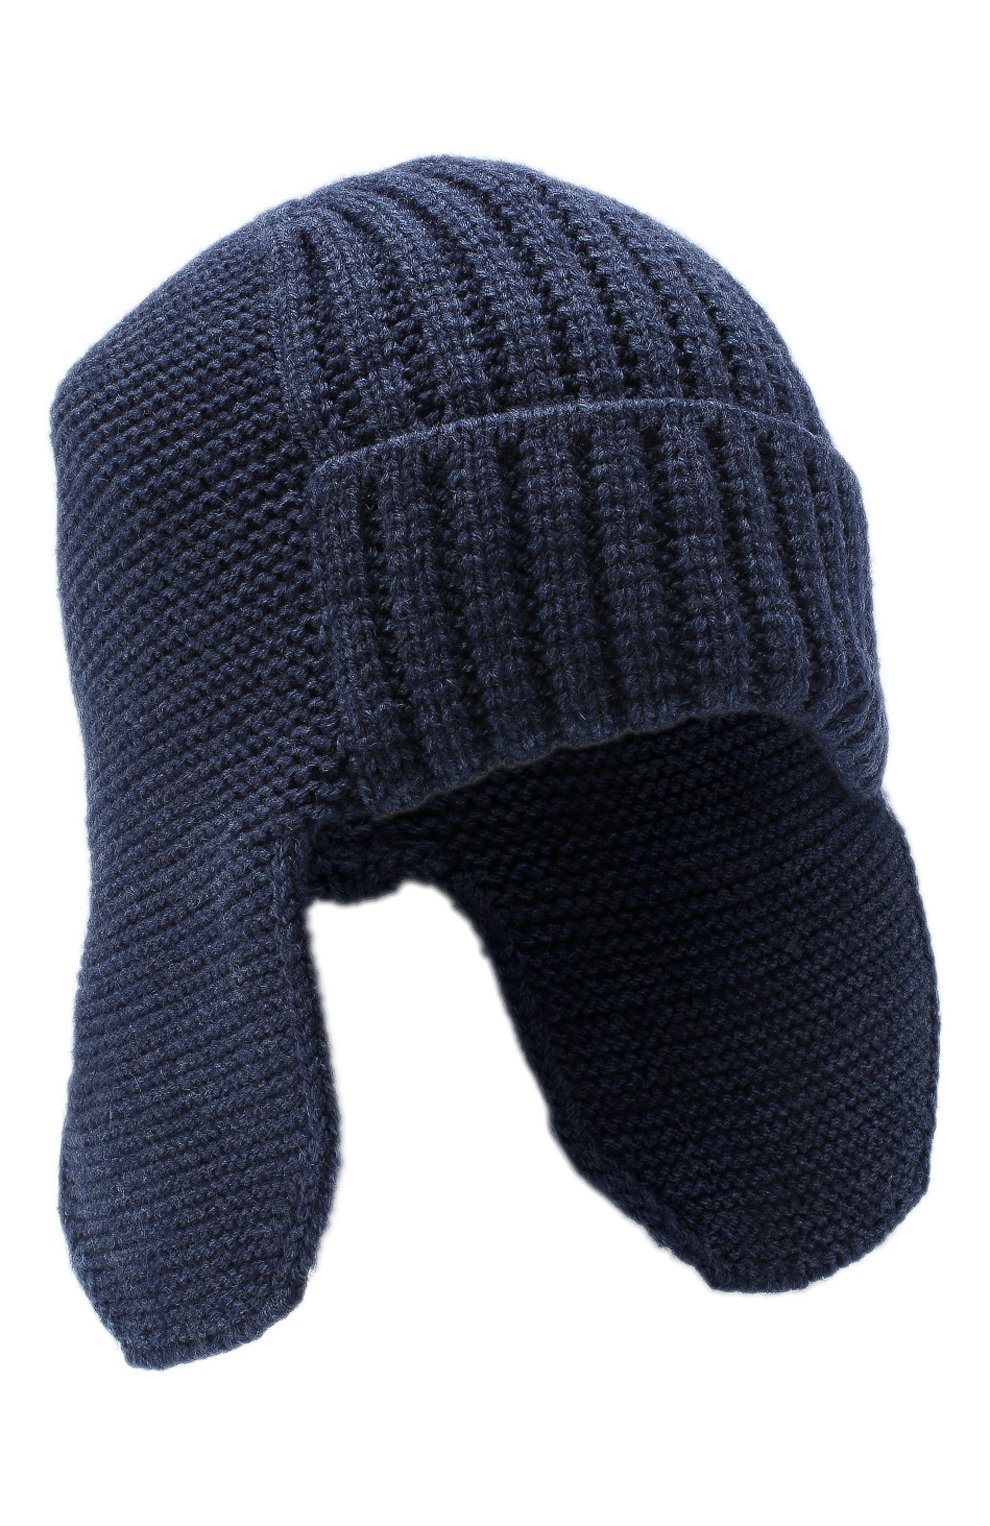 Мужская шапка-ушанка bright CANOE синего цвета, арт. 3447923 | Фото 1 (Материал: Текстиль, Шерсть, Синтетический материал; Кросс-КТ: Трикотаж)